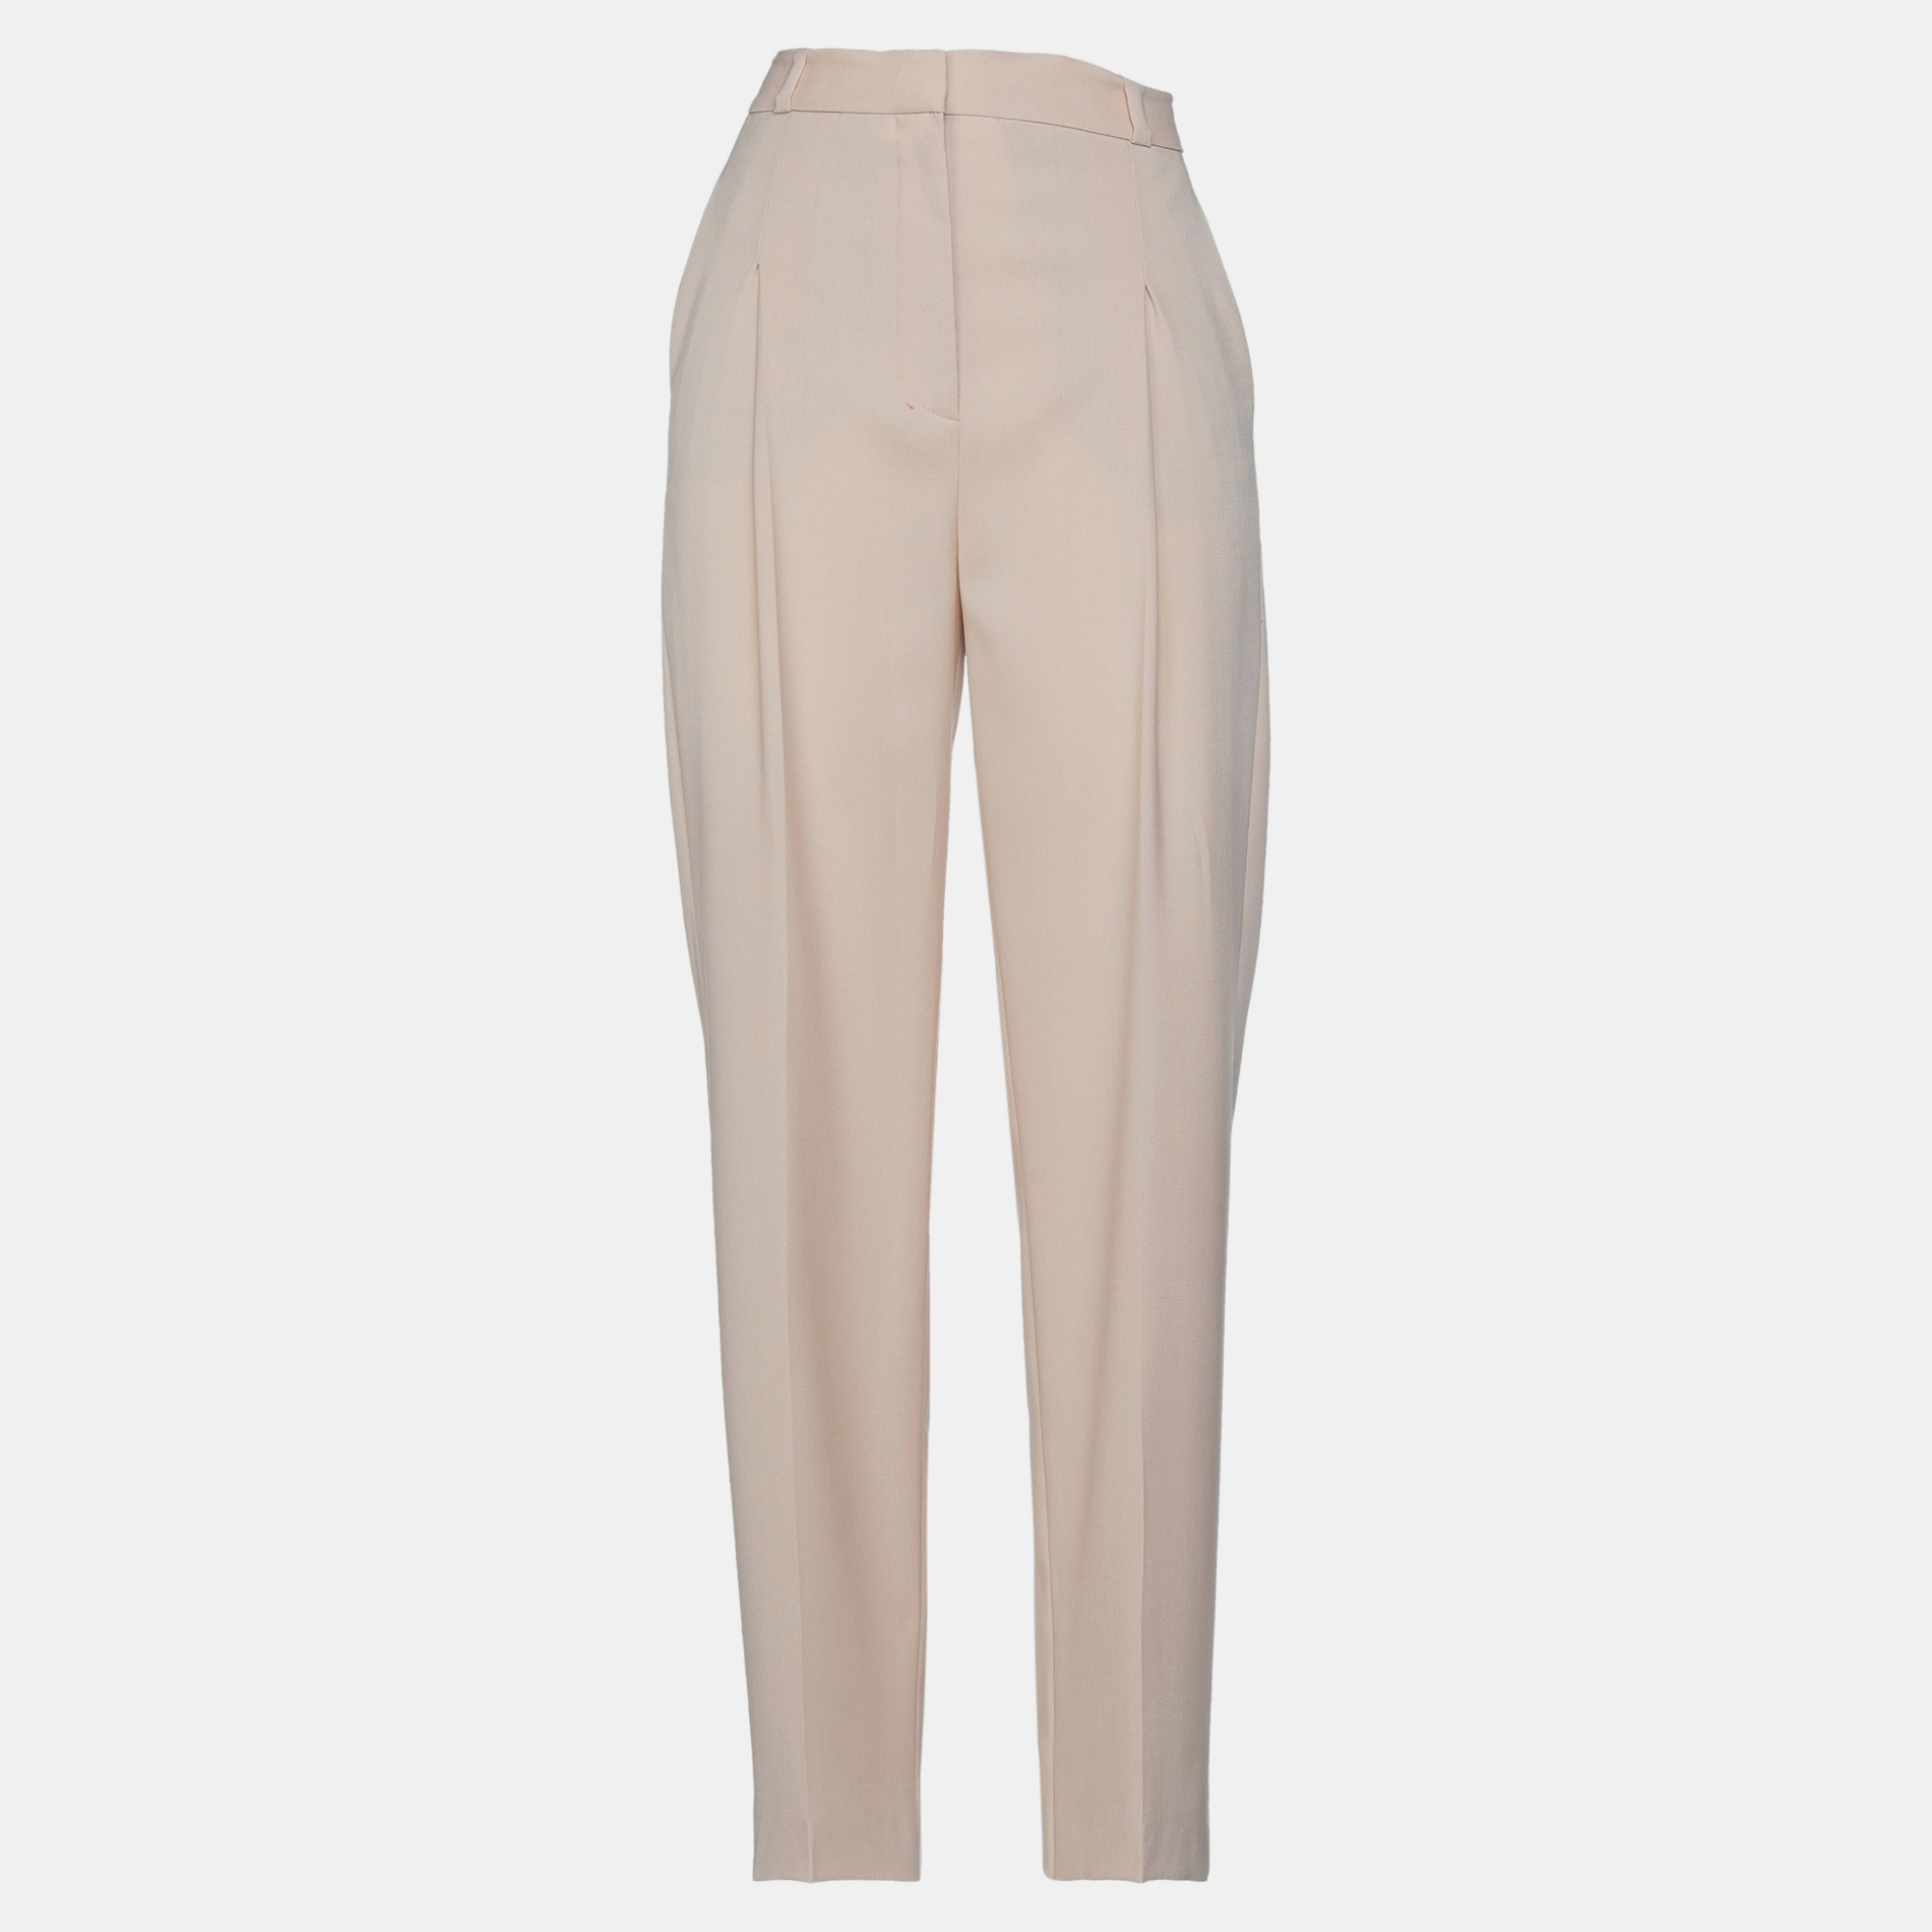 Stella mccartney beige wool wide-leg pants s (it 40)